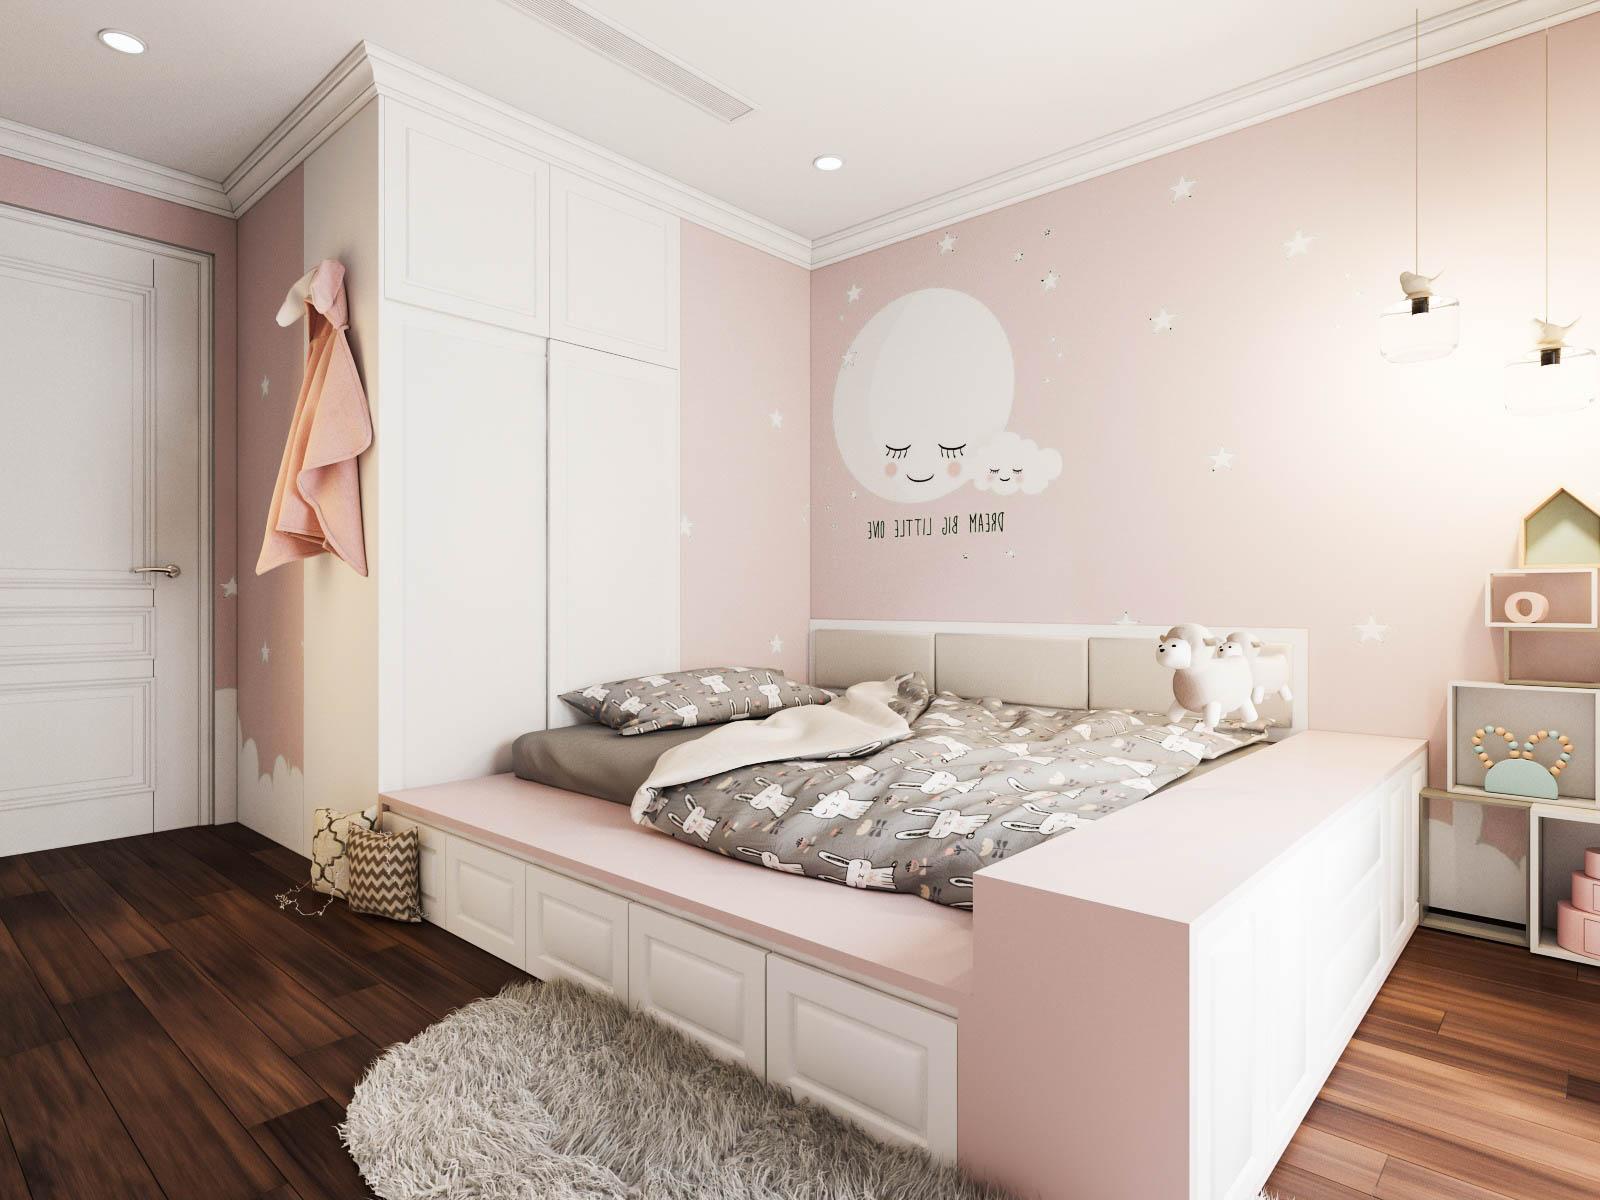 Phòng trẻ em được đánh giá là điểm nhấn thiết kế trong căn hộ này, vừa đảm bảo sự xuyên suốt của phong cách Tân cổ điển, vừa xinh tươi, năng động.